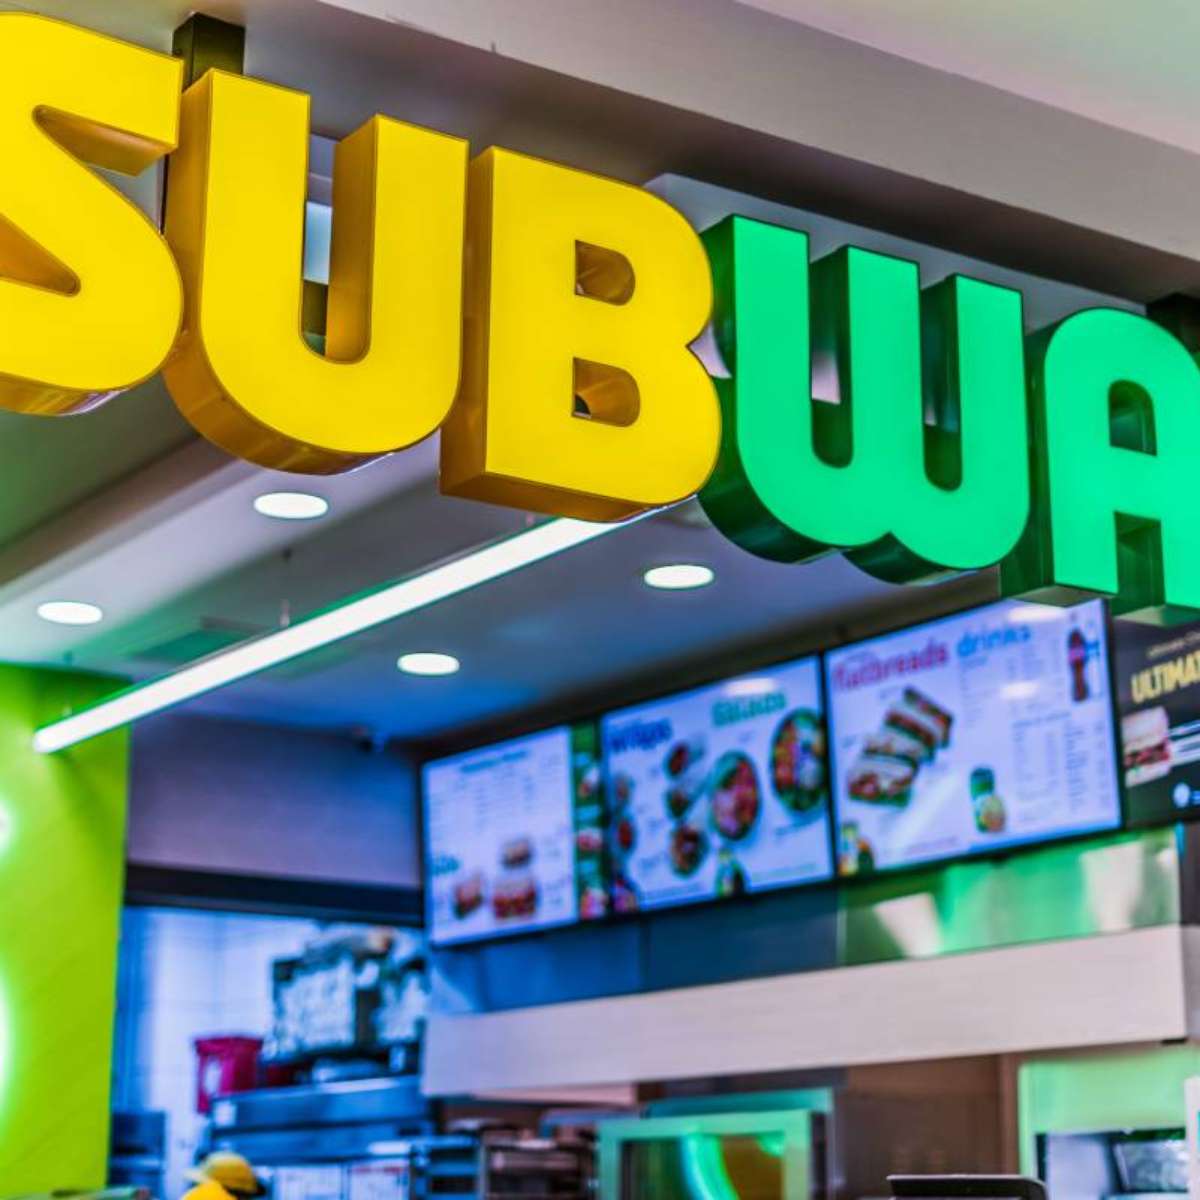 Deveremos abrir de 40 a 50 lojas no Brasil', diz presidente da Subway